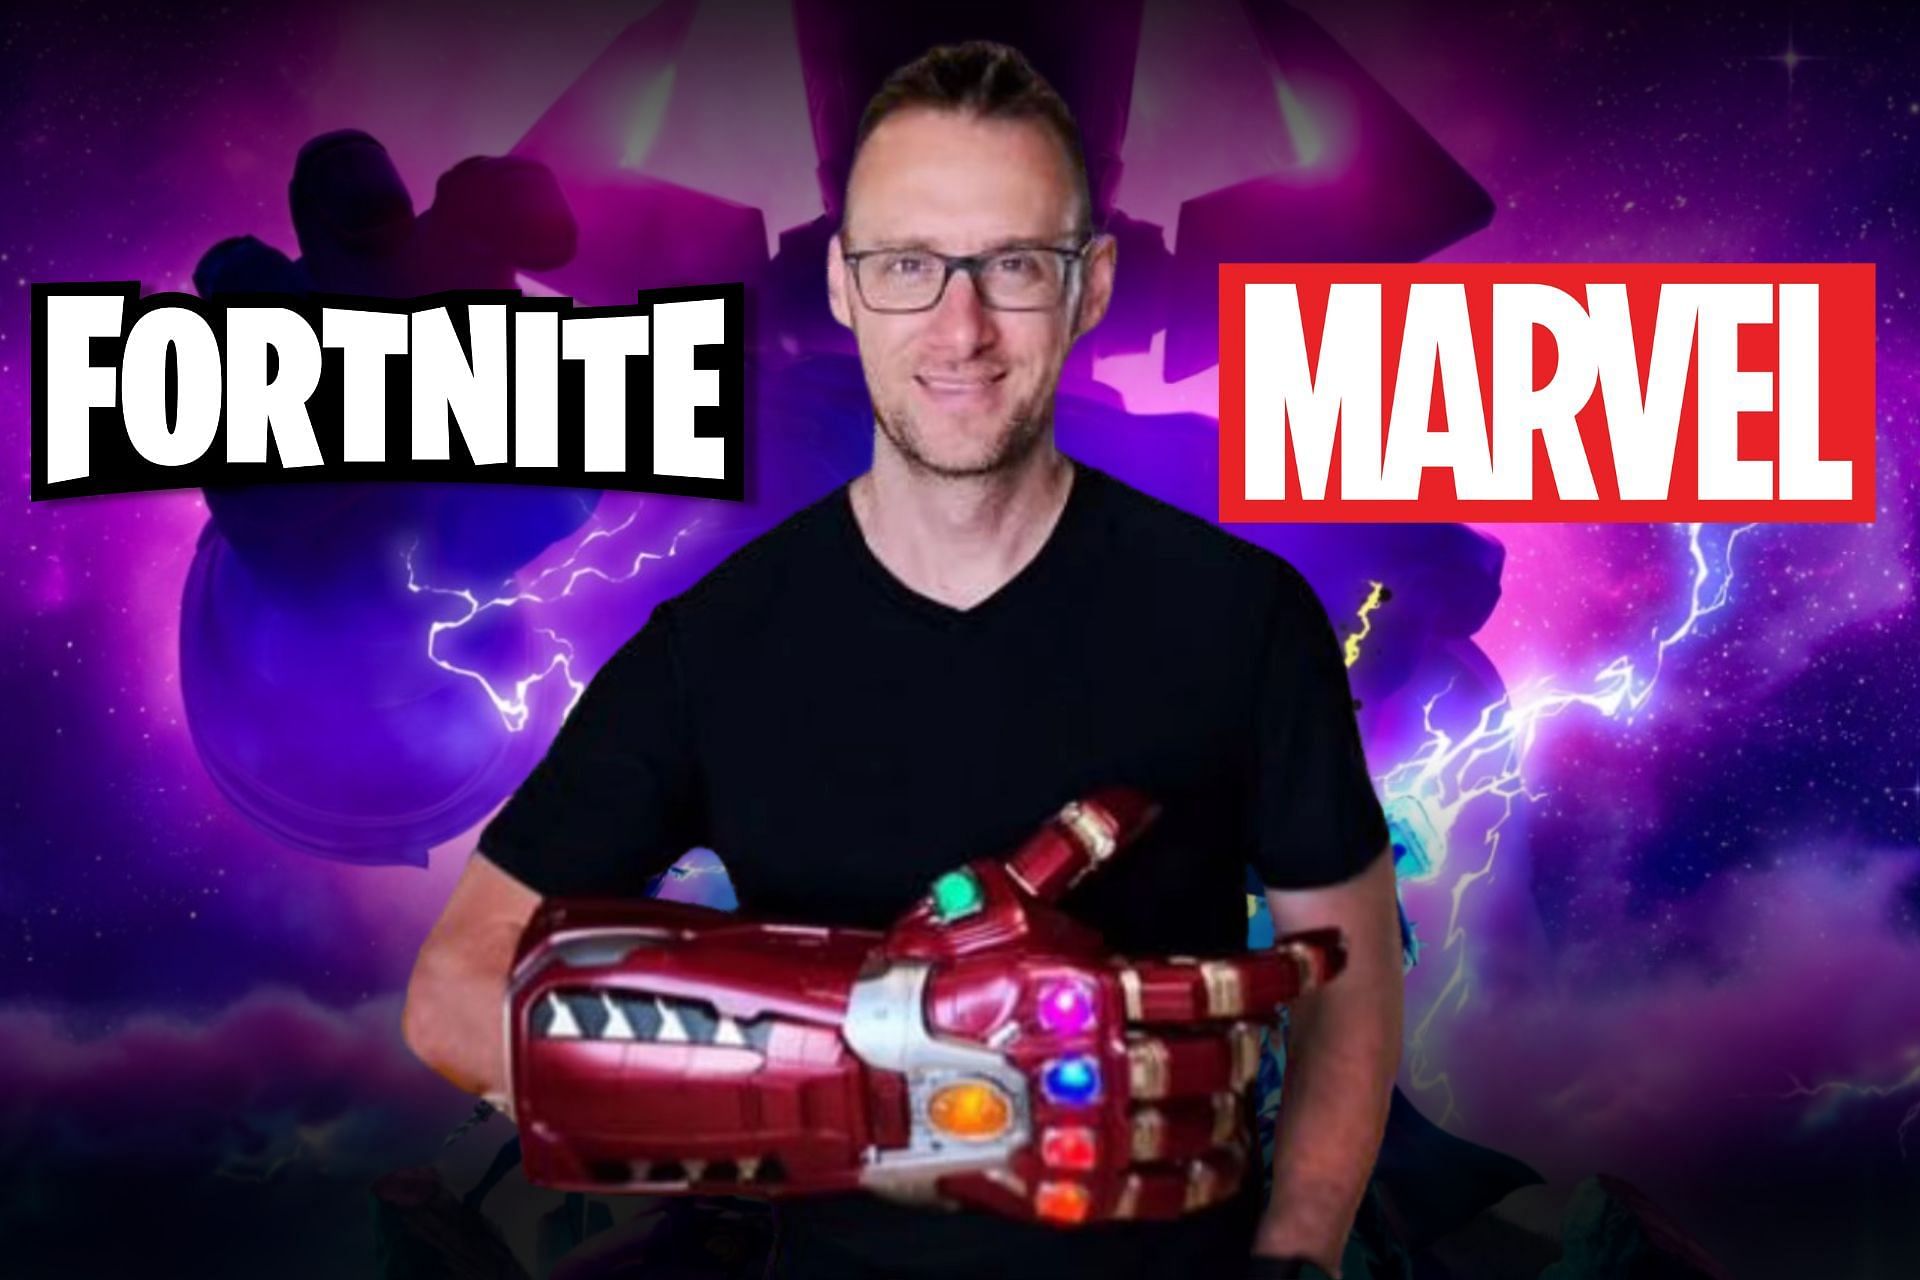 Marvel is here to stay in Fortnite (Image via Sportskeeda)